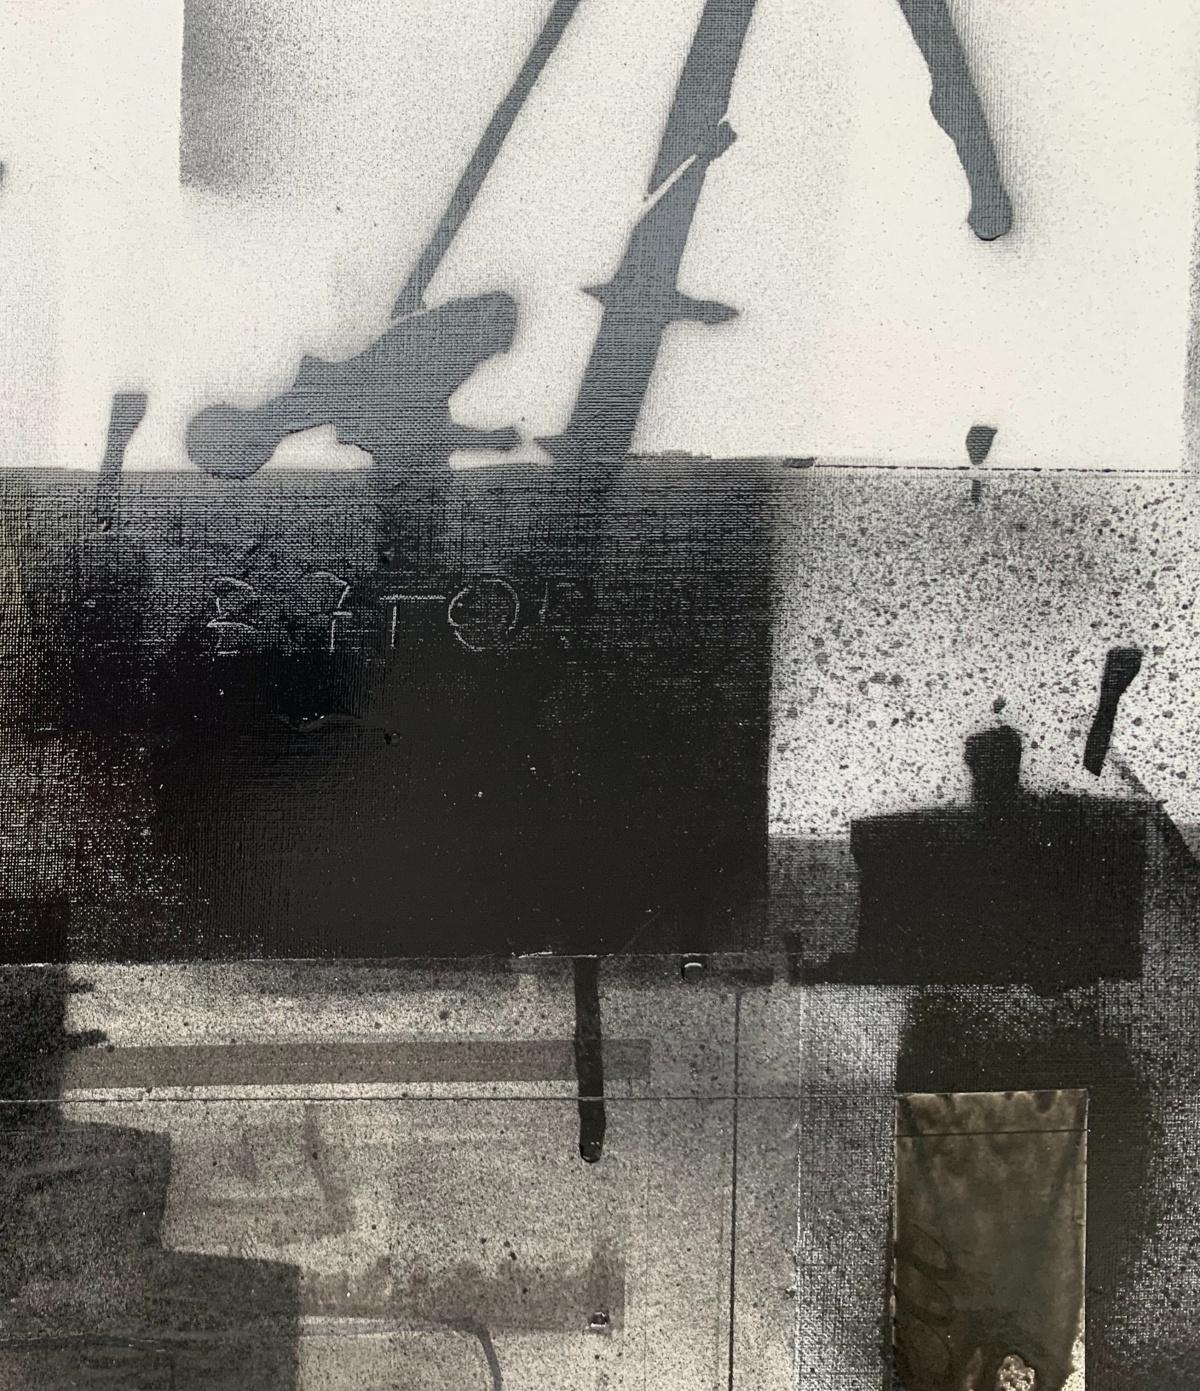 Peinture Cranes 4 - Peinture en noir et blanc, techniques mixtes, collage, art polonais - Noir Abstract Painting par Lukasz Fruczek